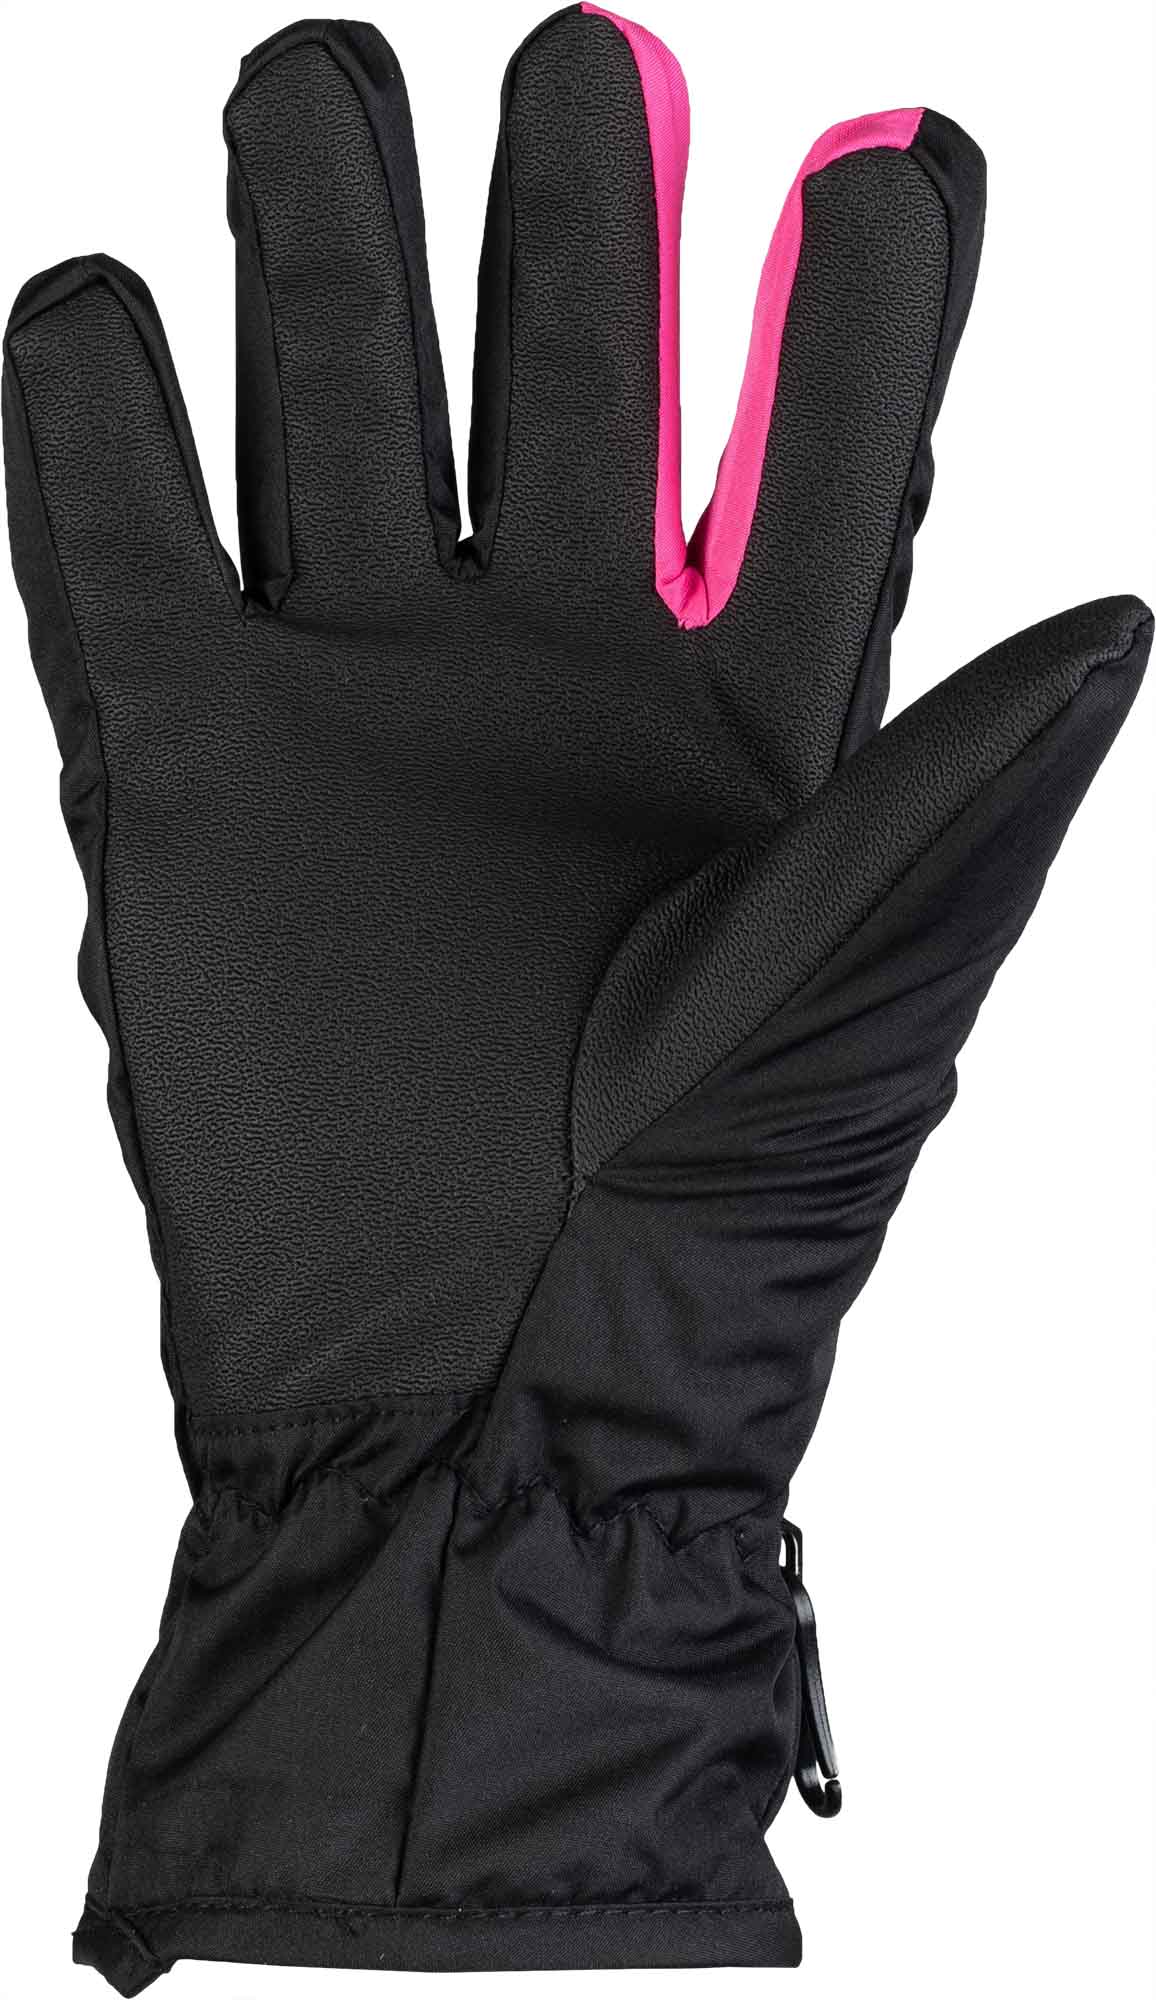 Girls’ gloves